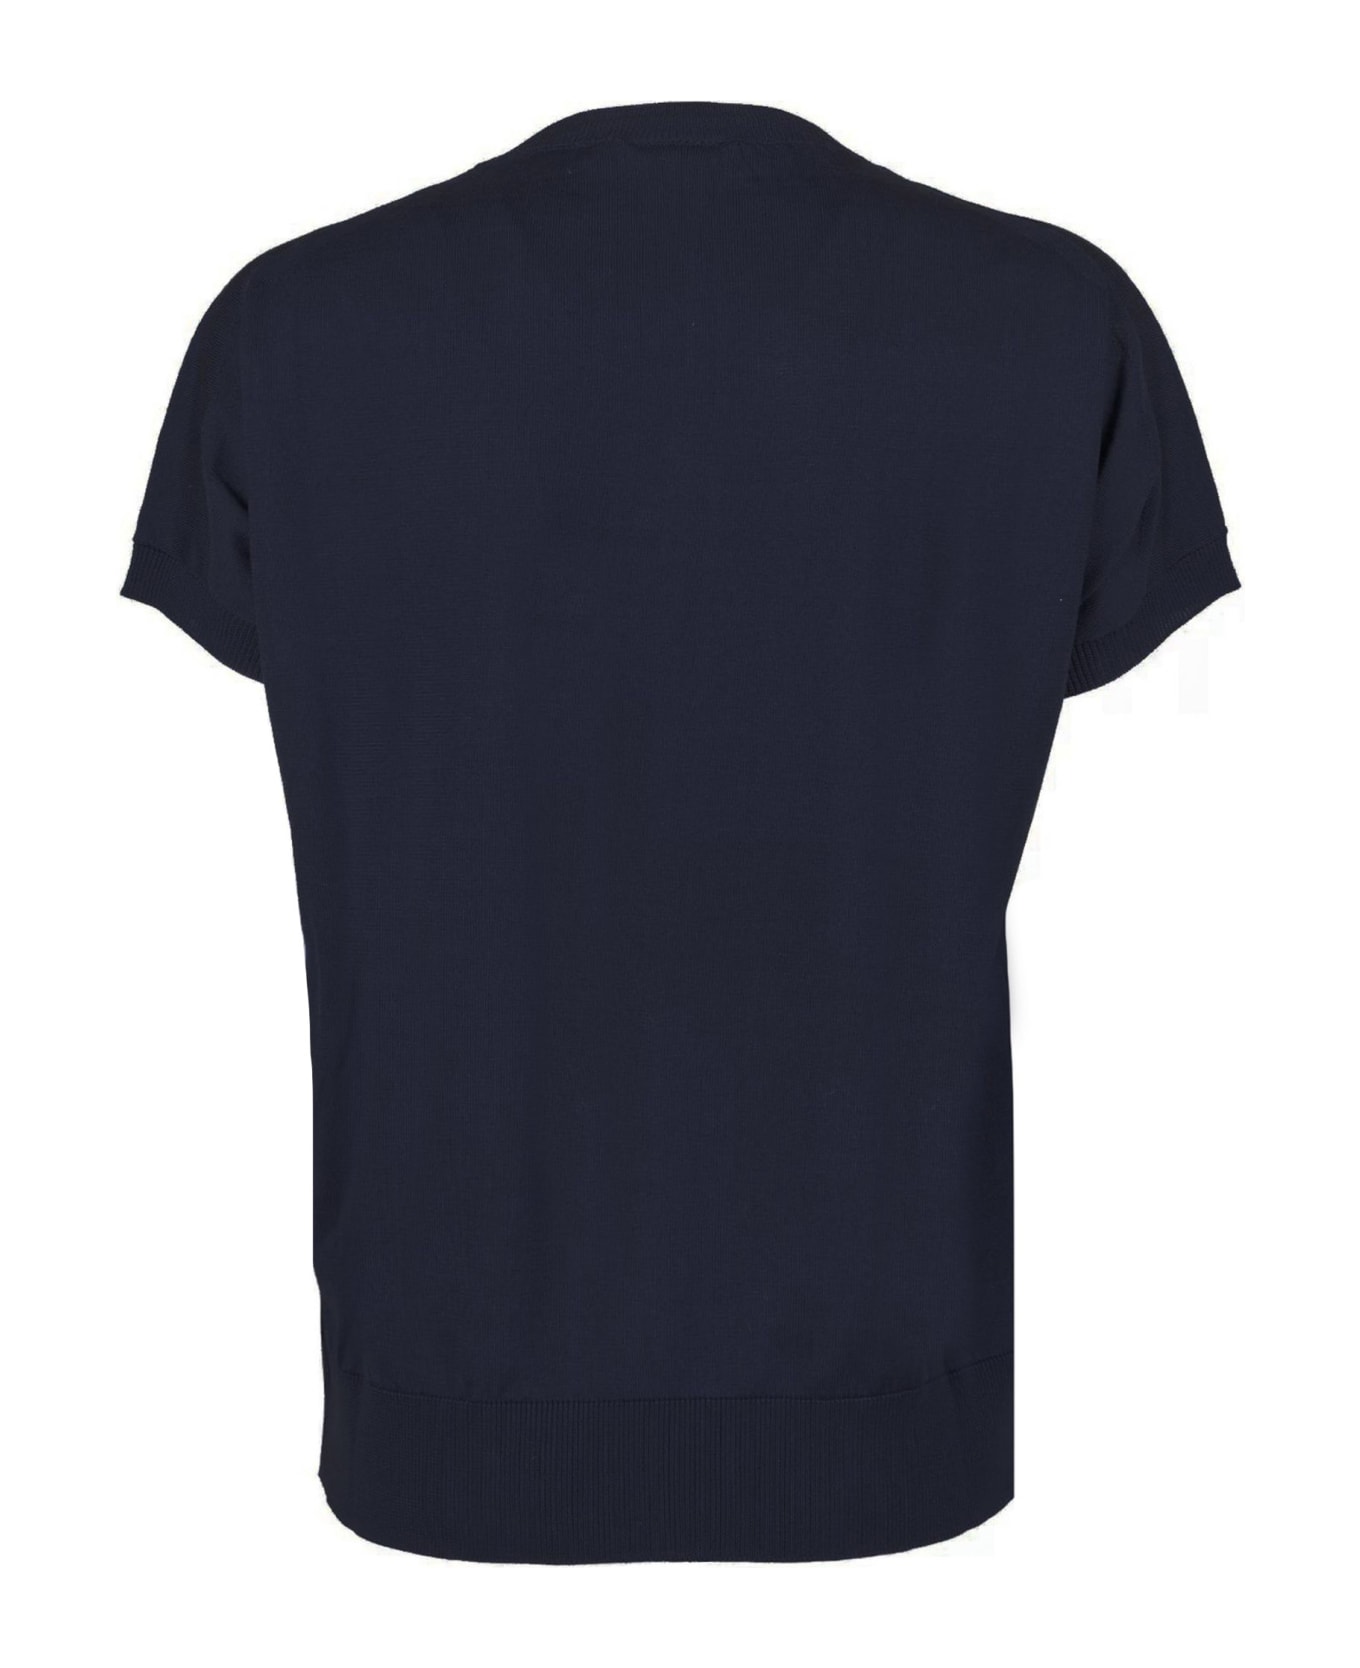 SEMICOUTURE Black Cotton Sweater - Black Tシャツ